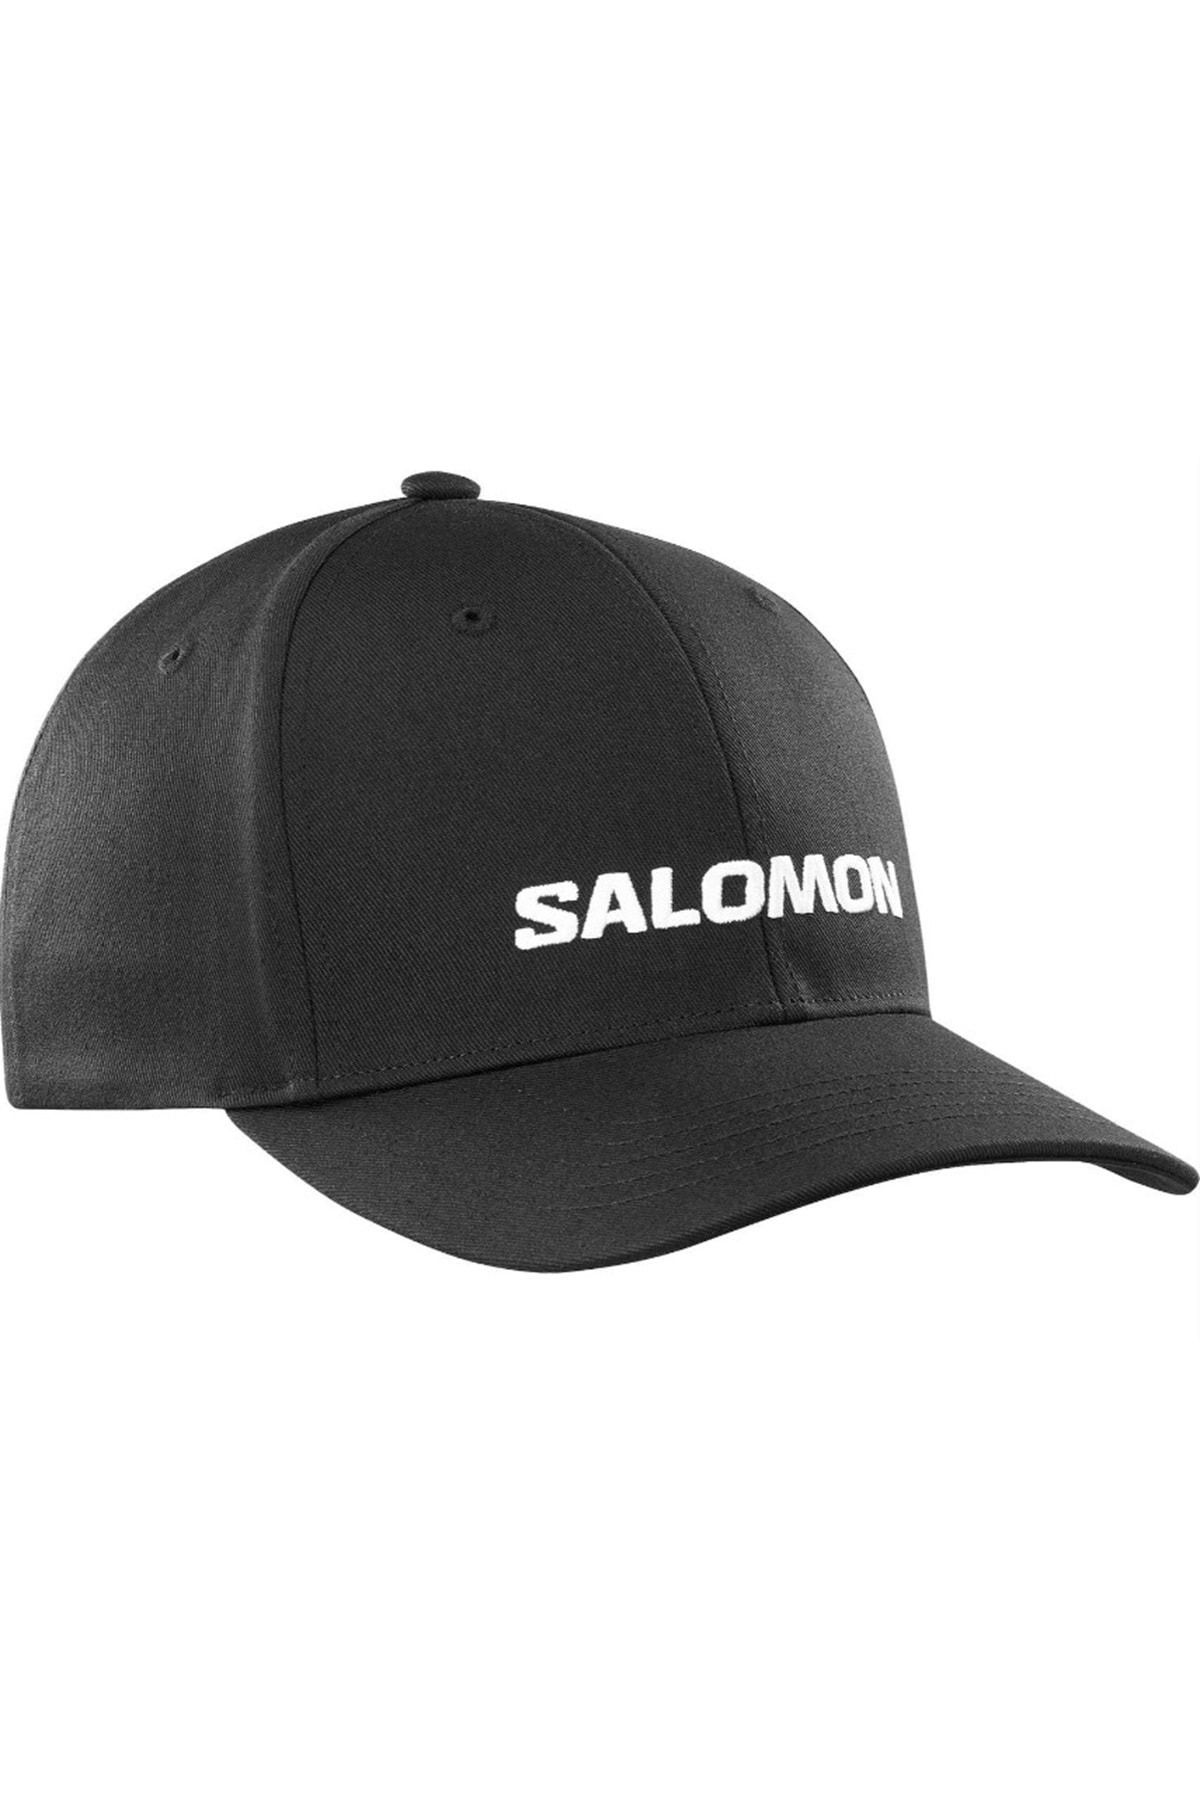 Salomon LC2237300 CAP LOGO HAT UNISEX Black